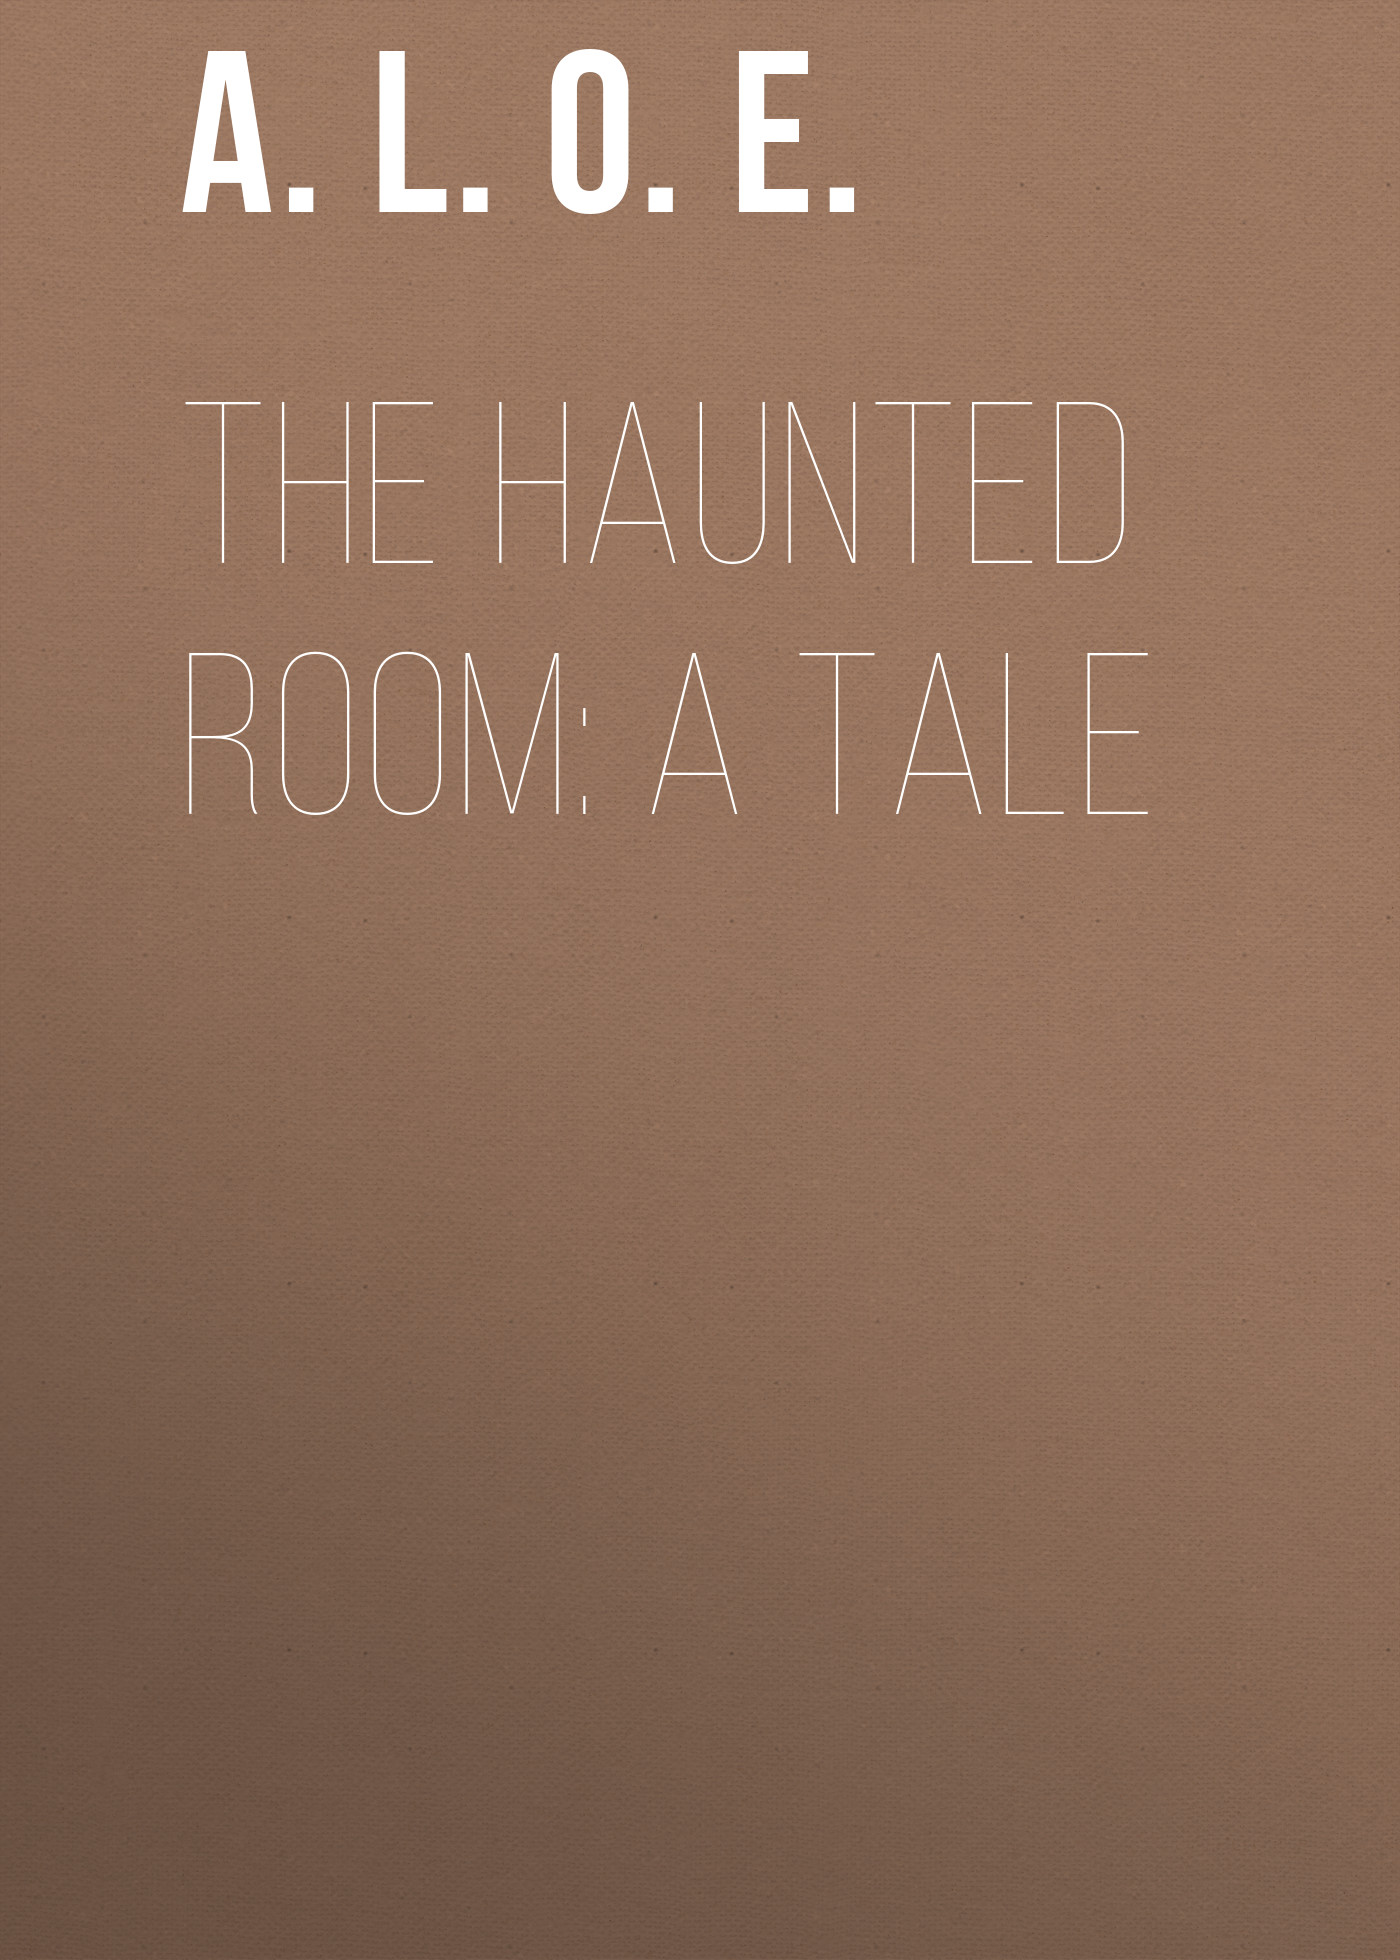 A. L. O. E. The Haunted Room: A Tale